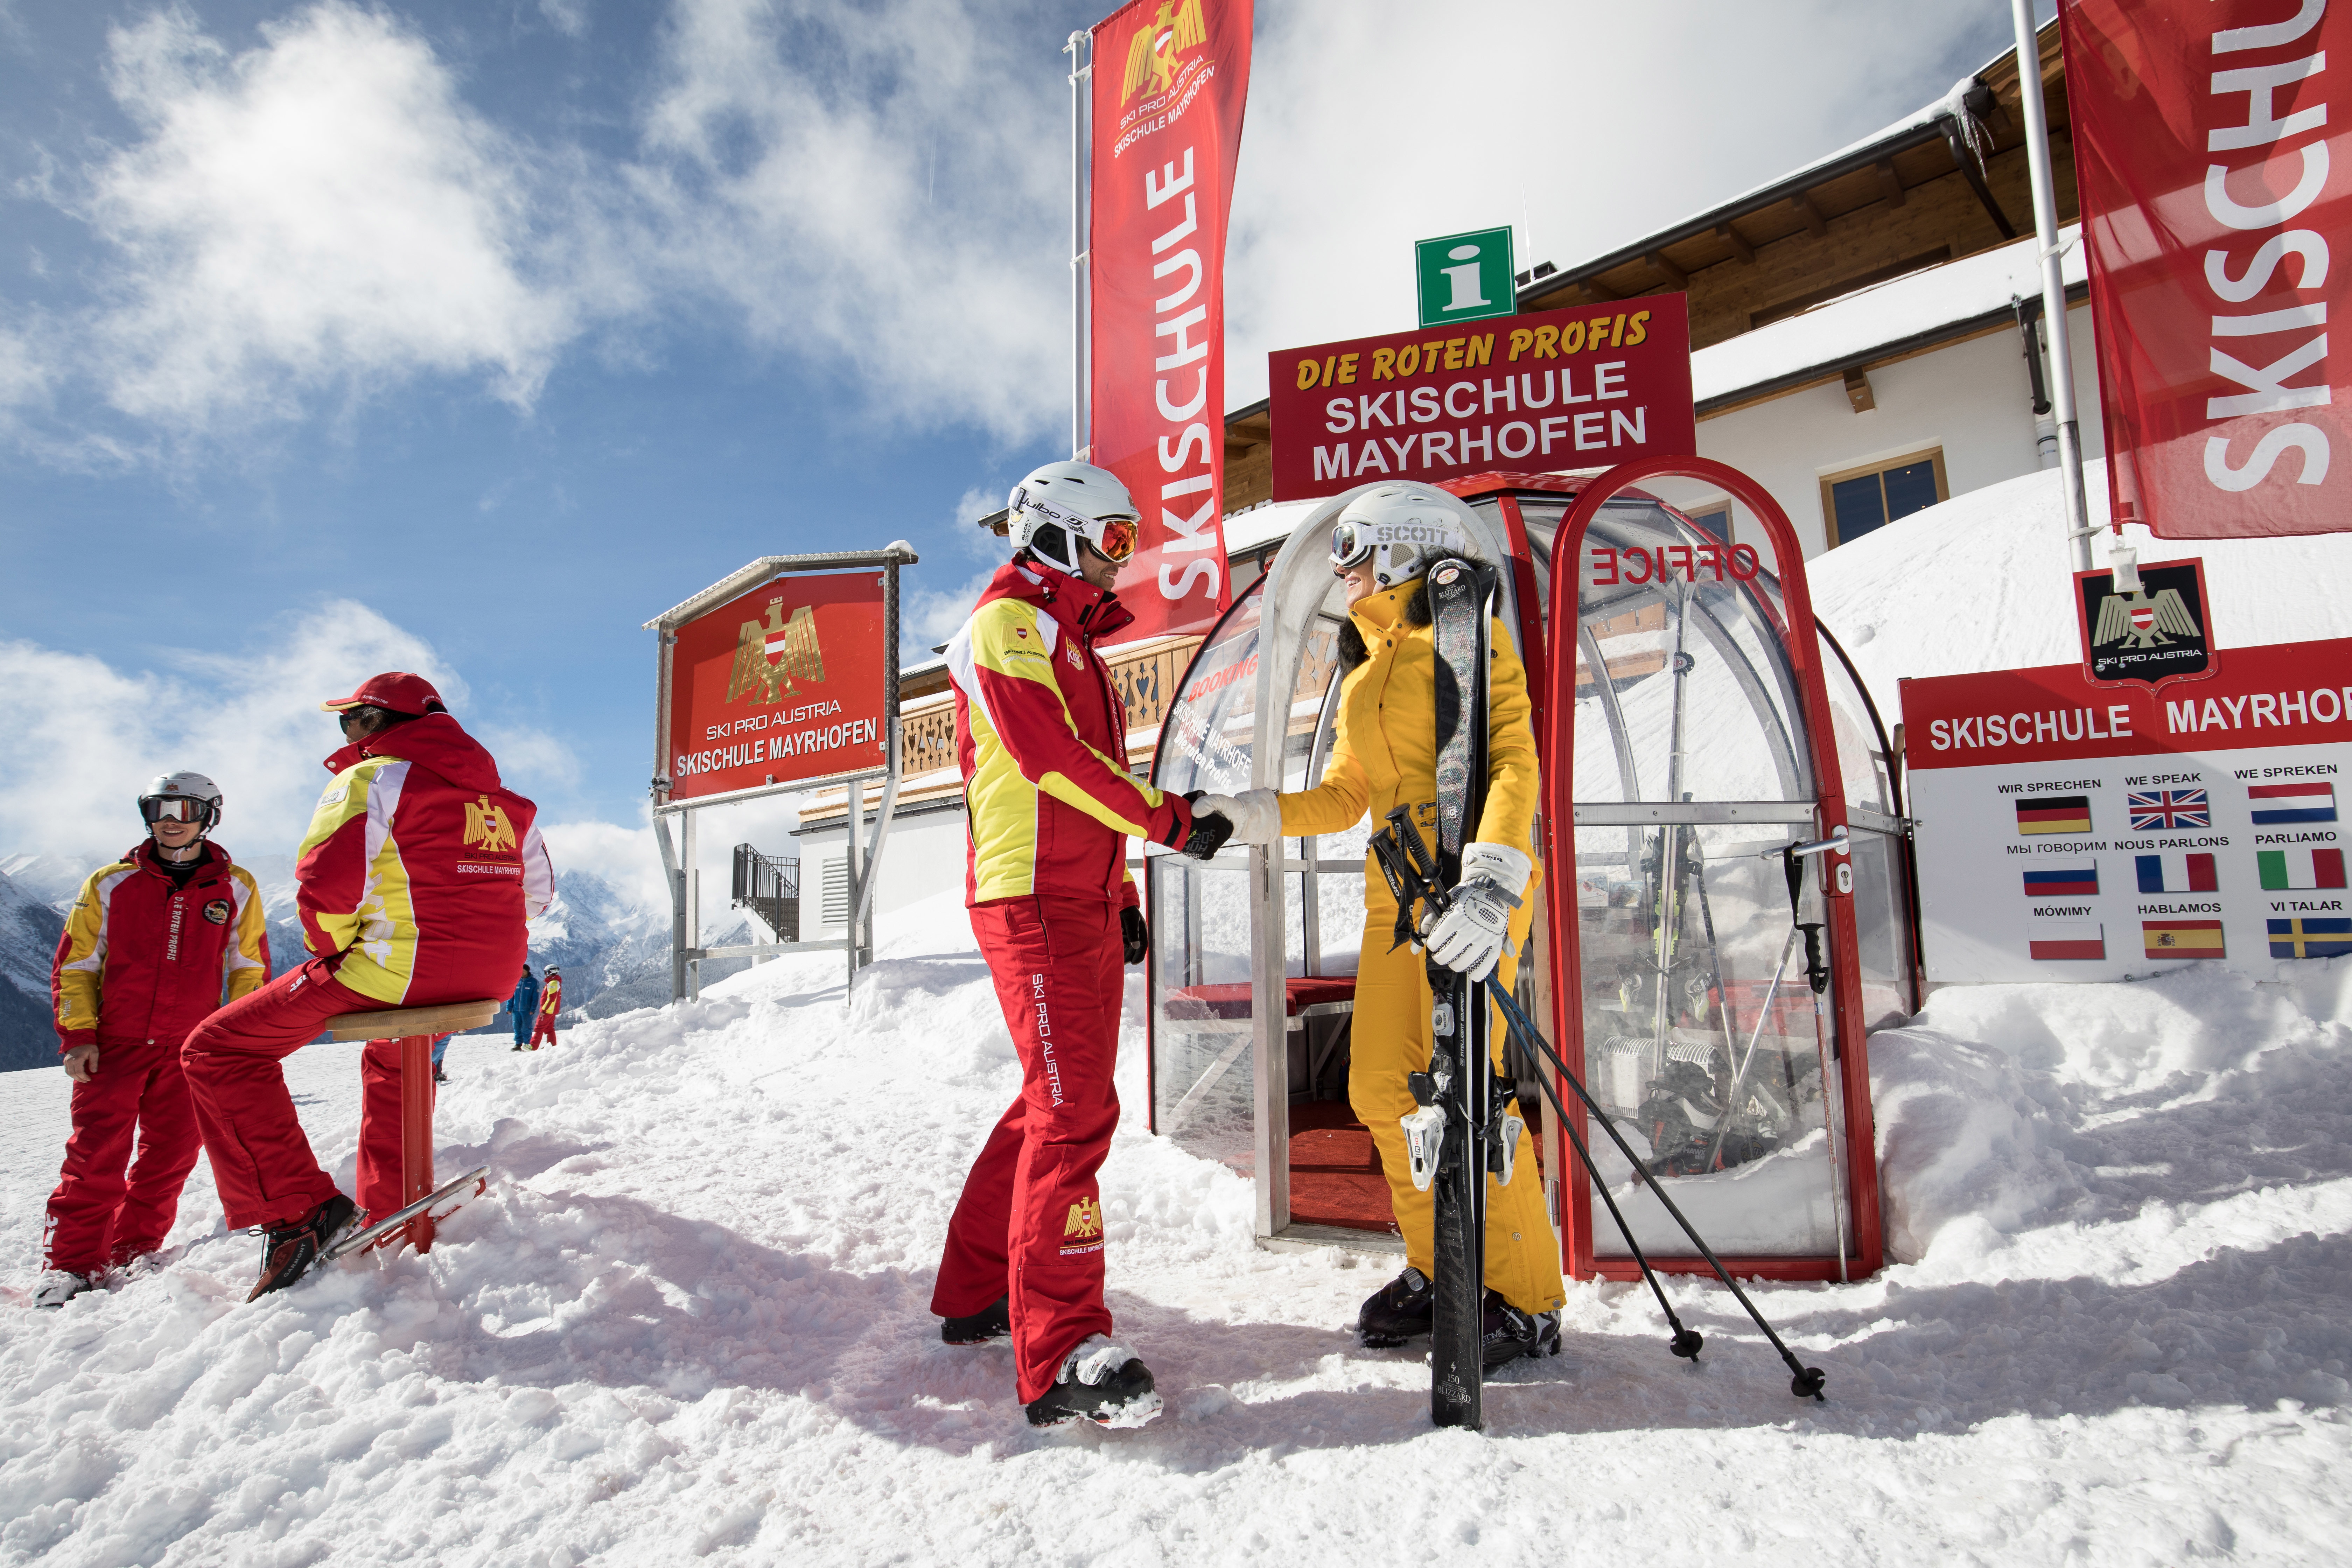 Ski school Ski Pro Austria Mayrhofen